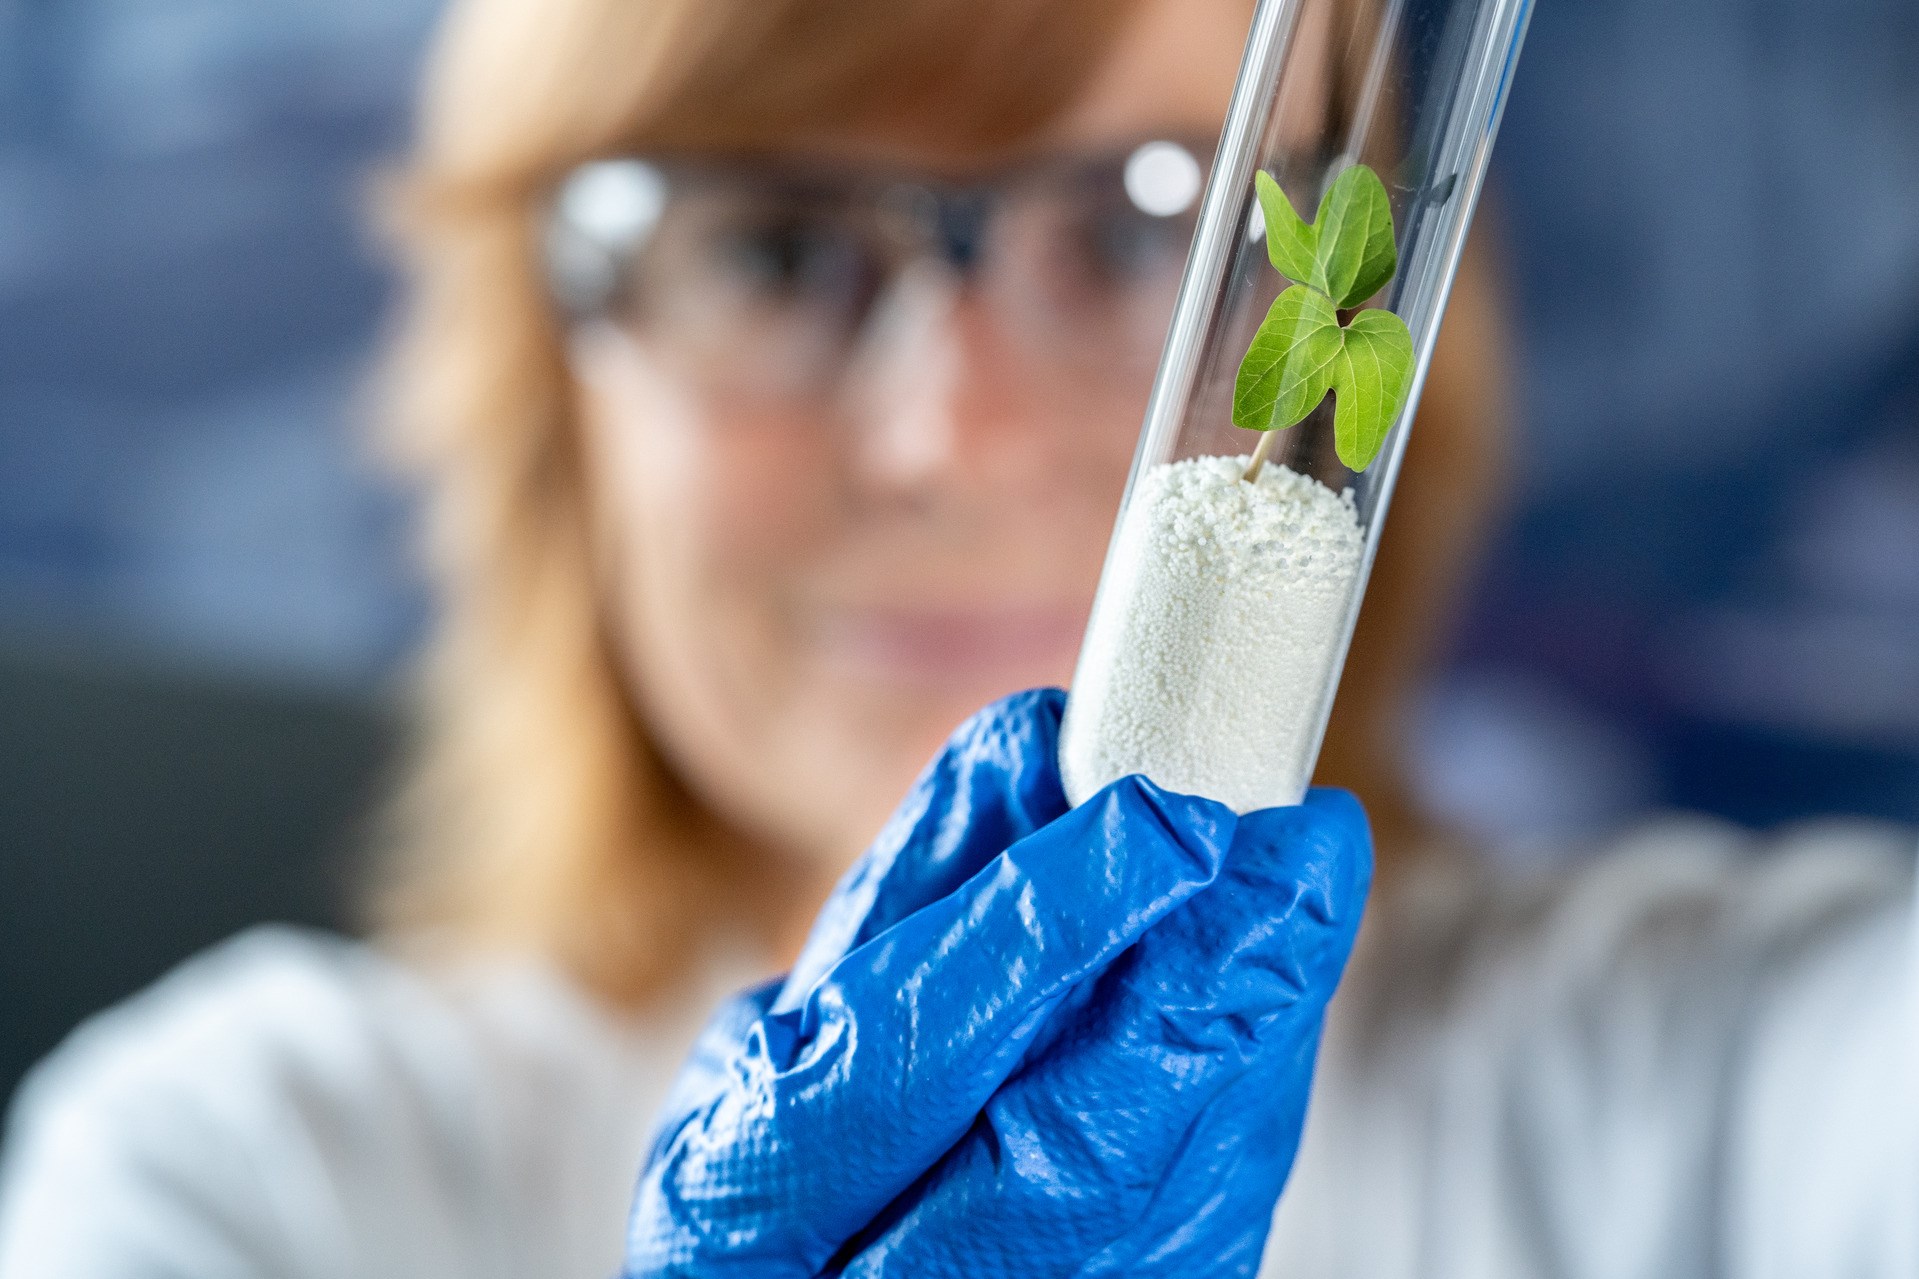 Scopeblue Lewatit Keyvisual - Mitarbeiterin mit Lewatit im Reagenzglas auf dem eine Pflanze wächst